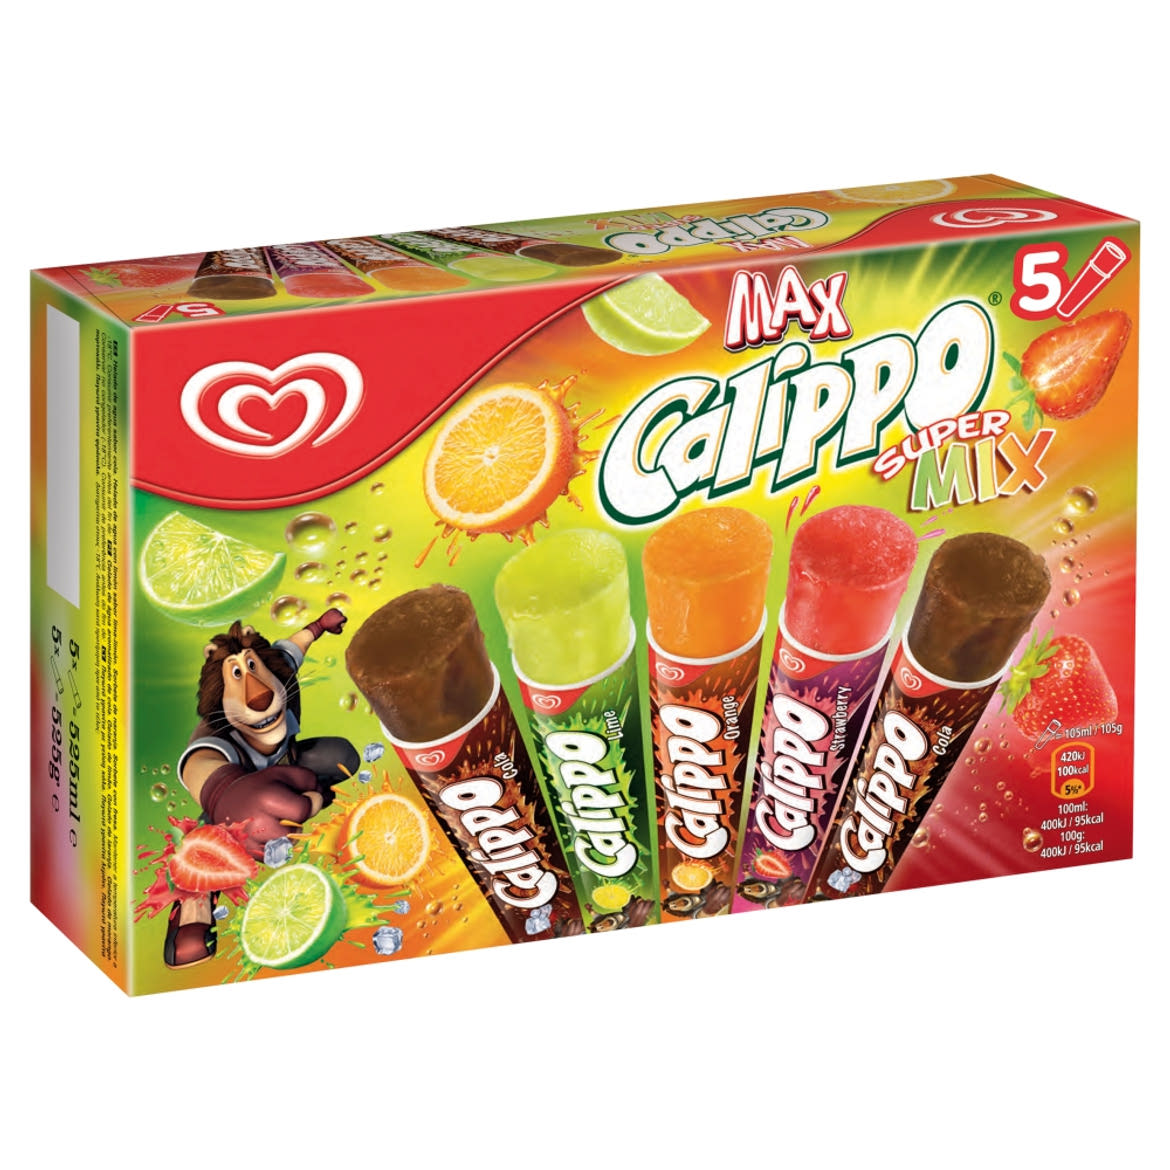 Calippo Max Super Mix 5 x 105 ml